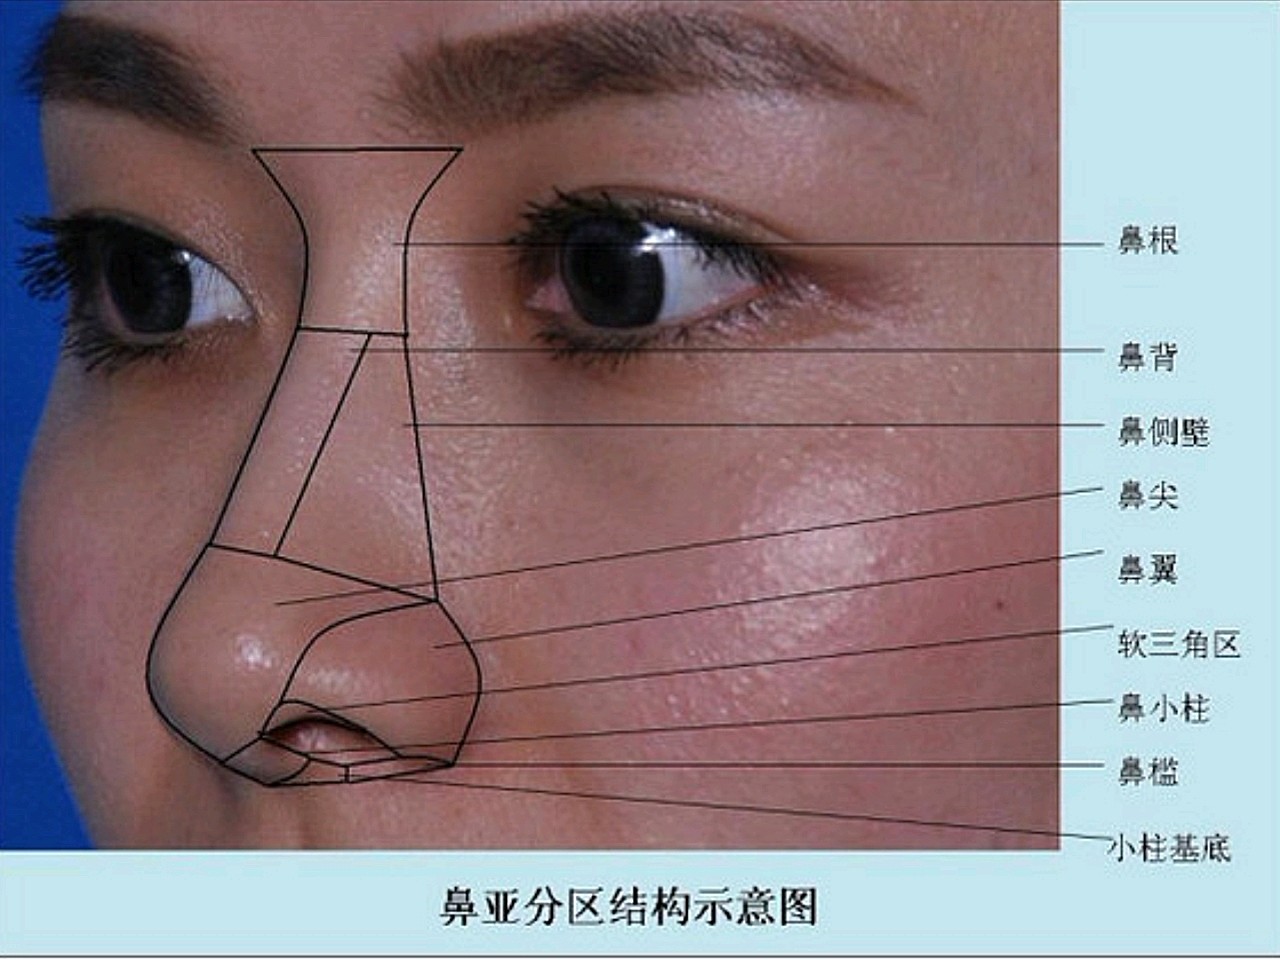 和你自己脸型搭配的鼻子就是最好的,但是通常来说鼻子有一个基础的